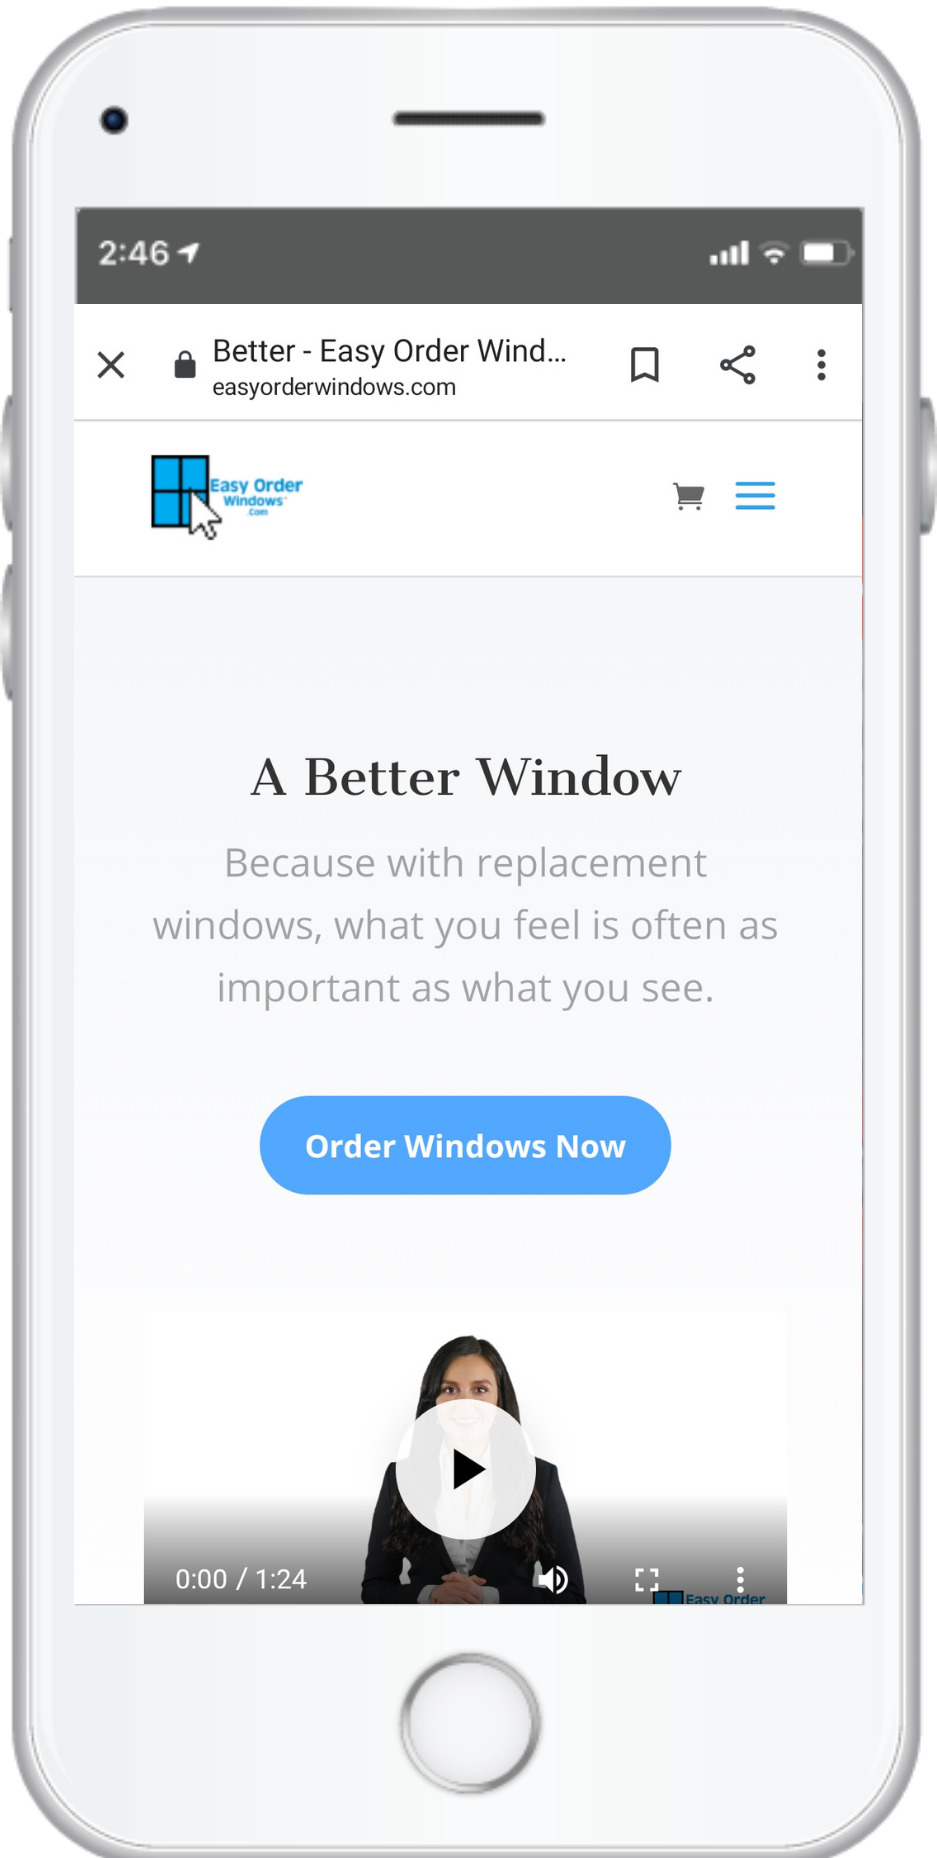 Easy Order Windows - Mobile